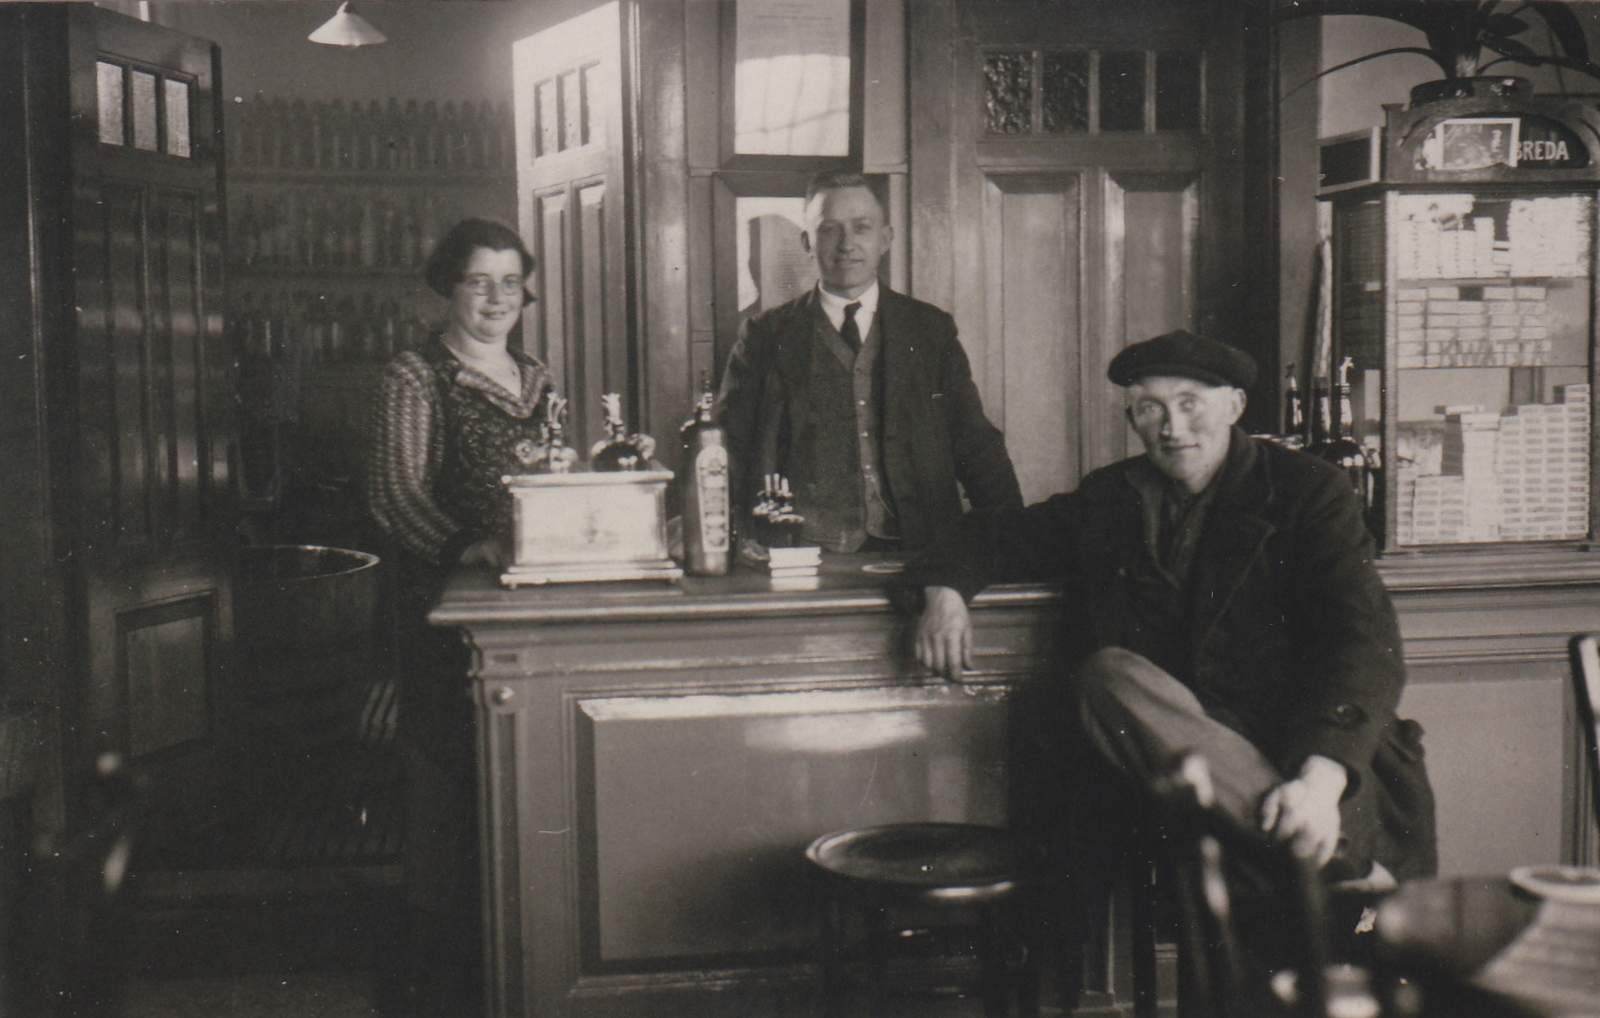 021-174 - Industrieweg - Cafe van Zessen - 1932.jpg